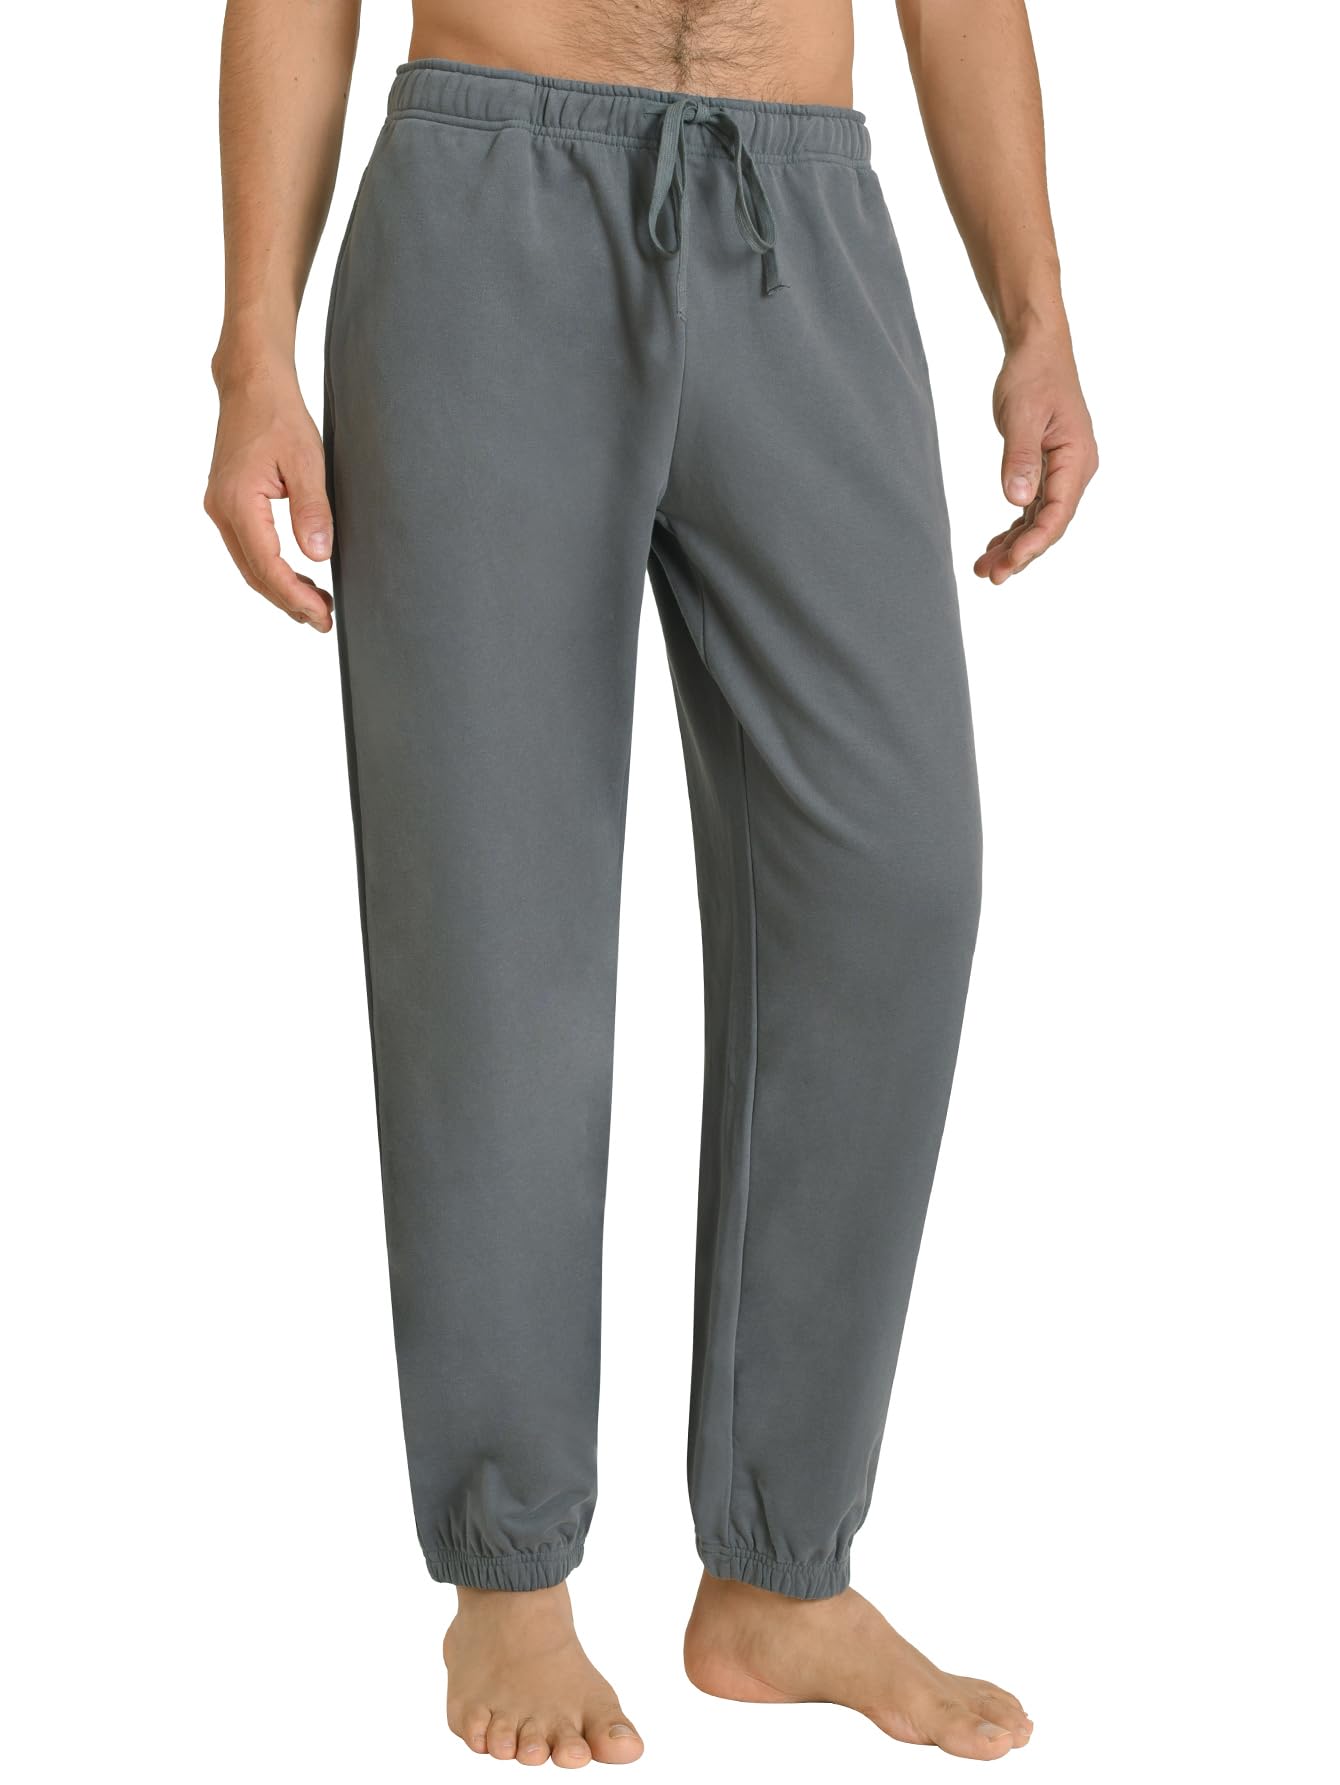 Men's Cotton Lounge Pants Jogger Sweatpants with Pockets - Latuza